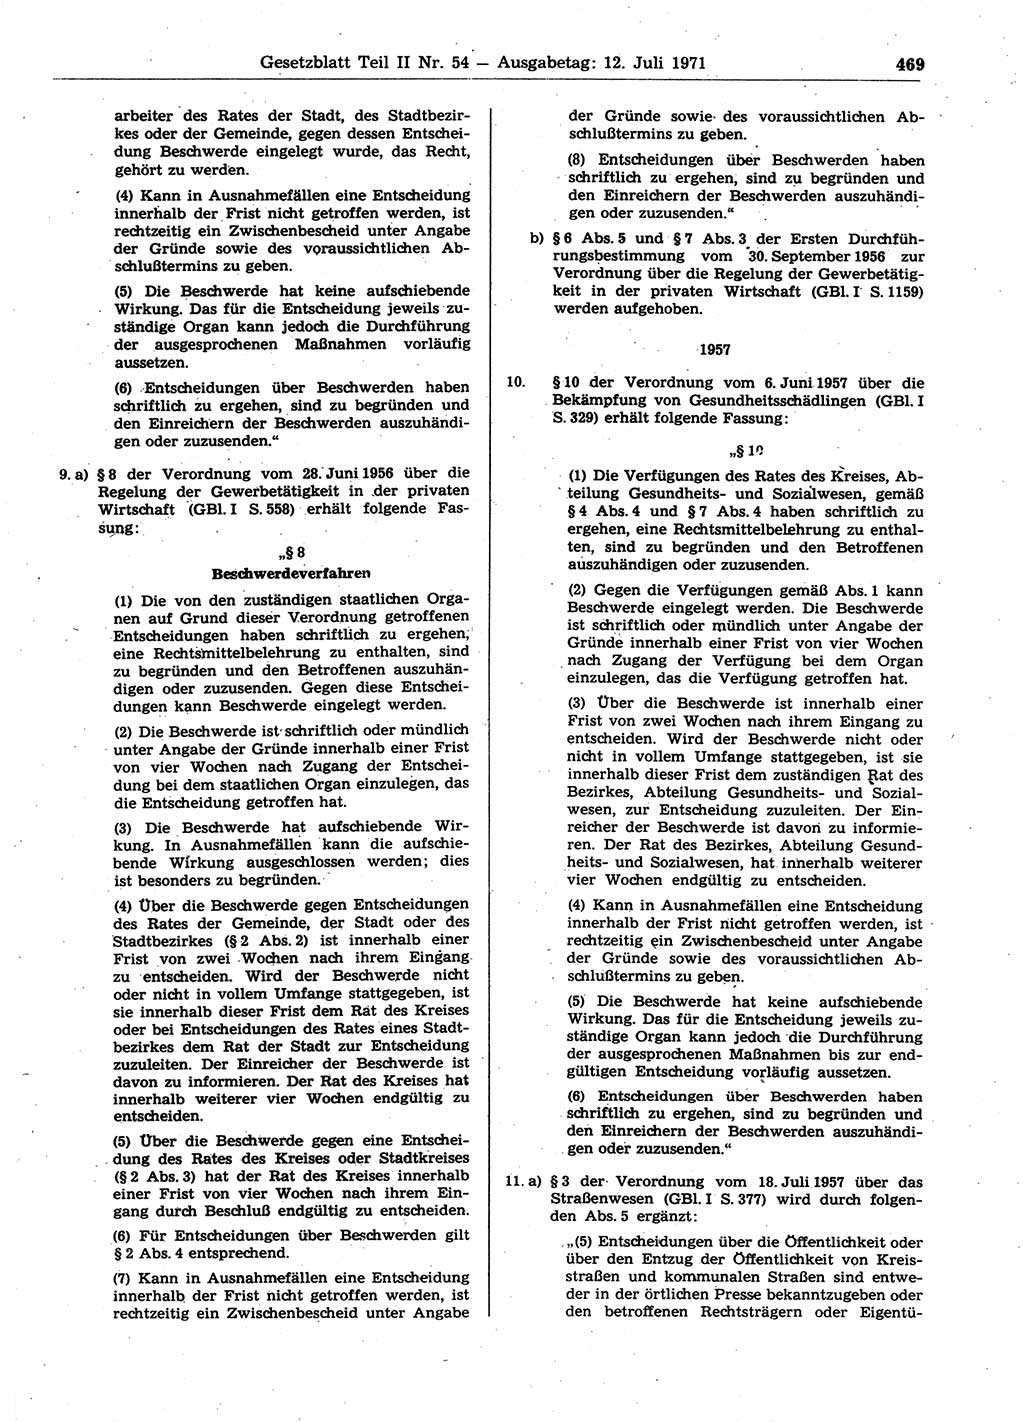 Gesetzblatt (GBl.) der Deutschen Demokratischen Republik (DDR) Teil ⅠⅠ 1971, Seite 469 (GBl. DDR ⅠⅠ 1971, S. 469)